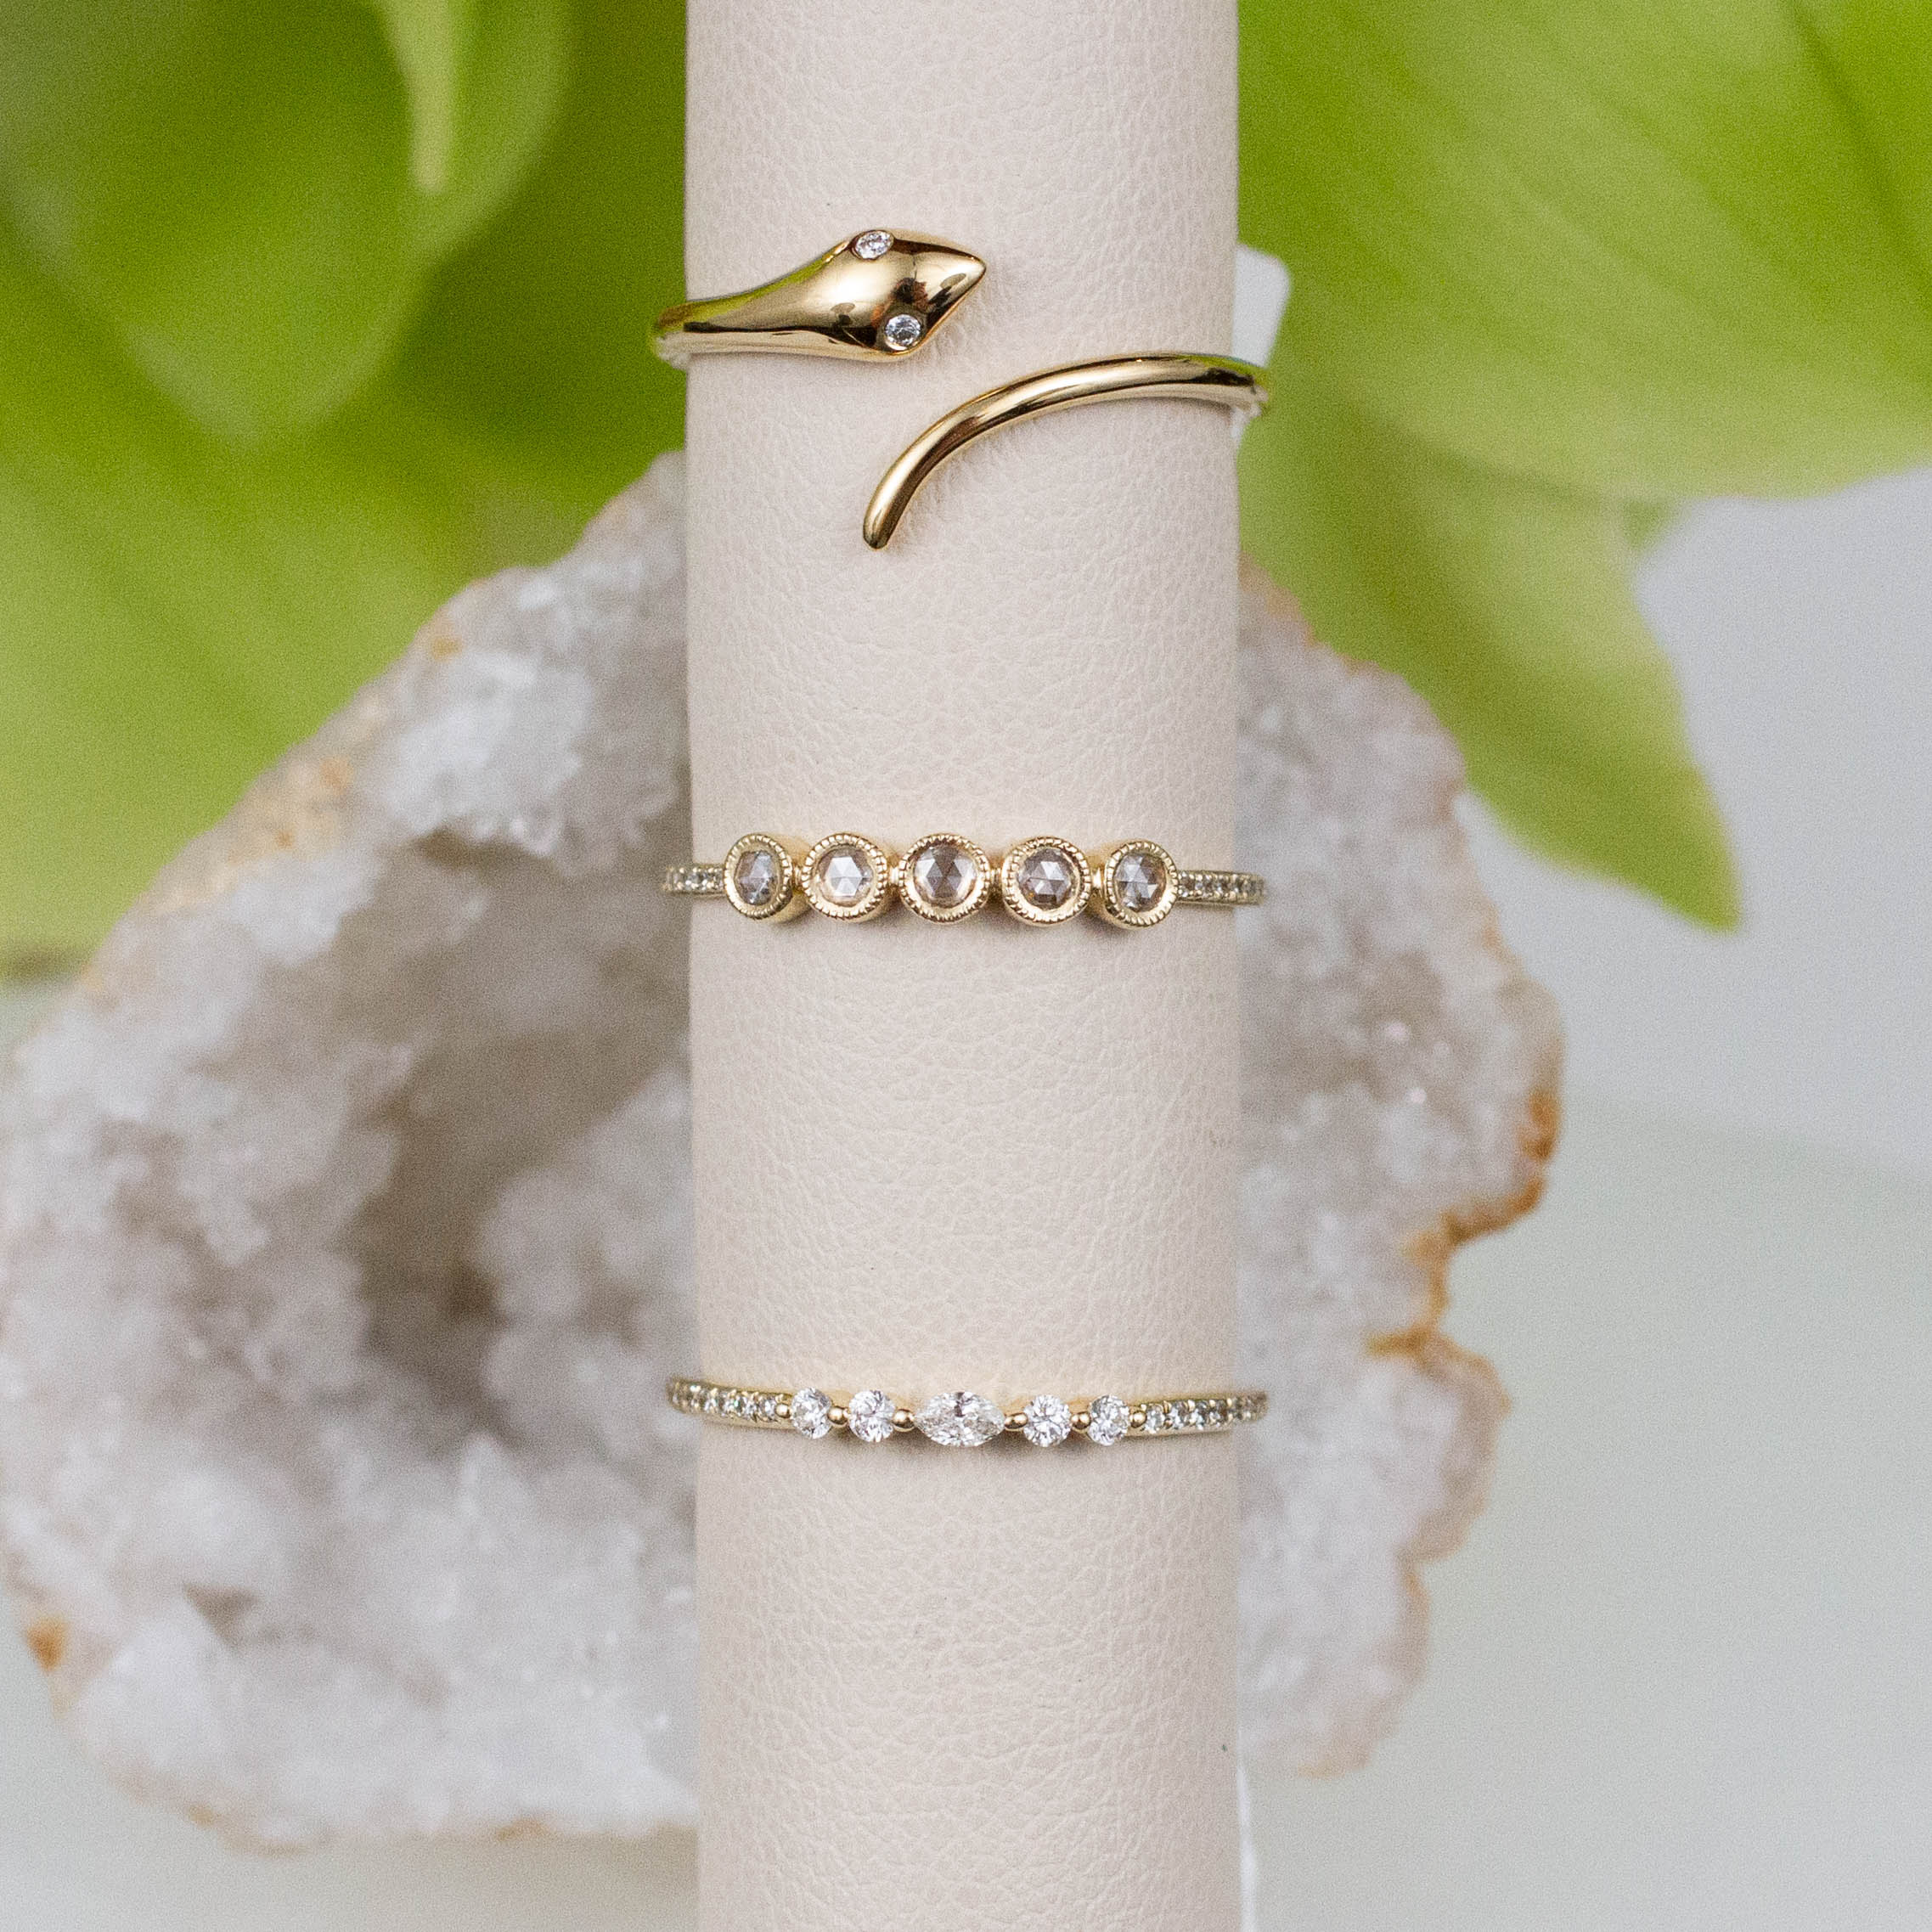 Retro Snake Rings For Women Stainless Steel Gold Silver Color Finger Ring  Vintage Gothic Female Aesthetic Jewelry |Rings|… | Women rings, Vintage  gothic, Snake ring